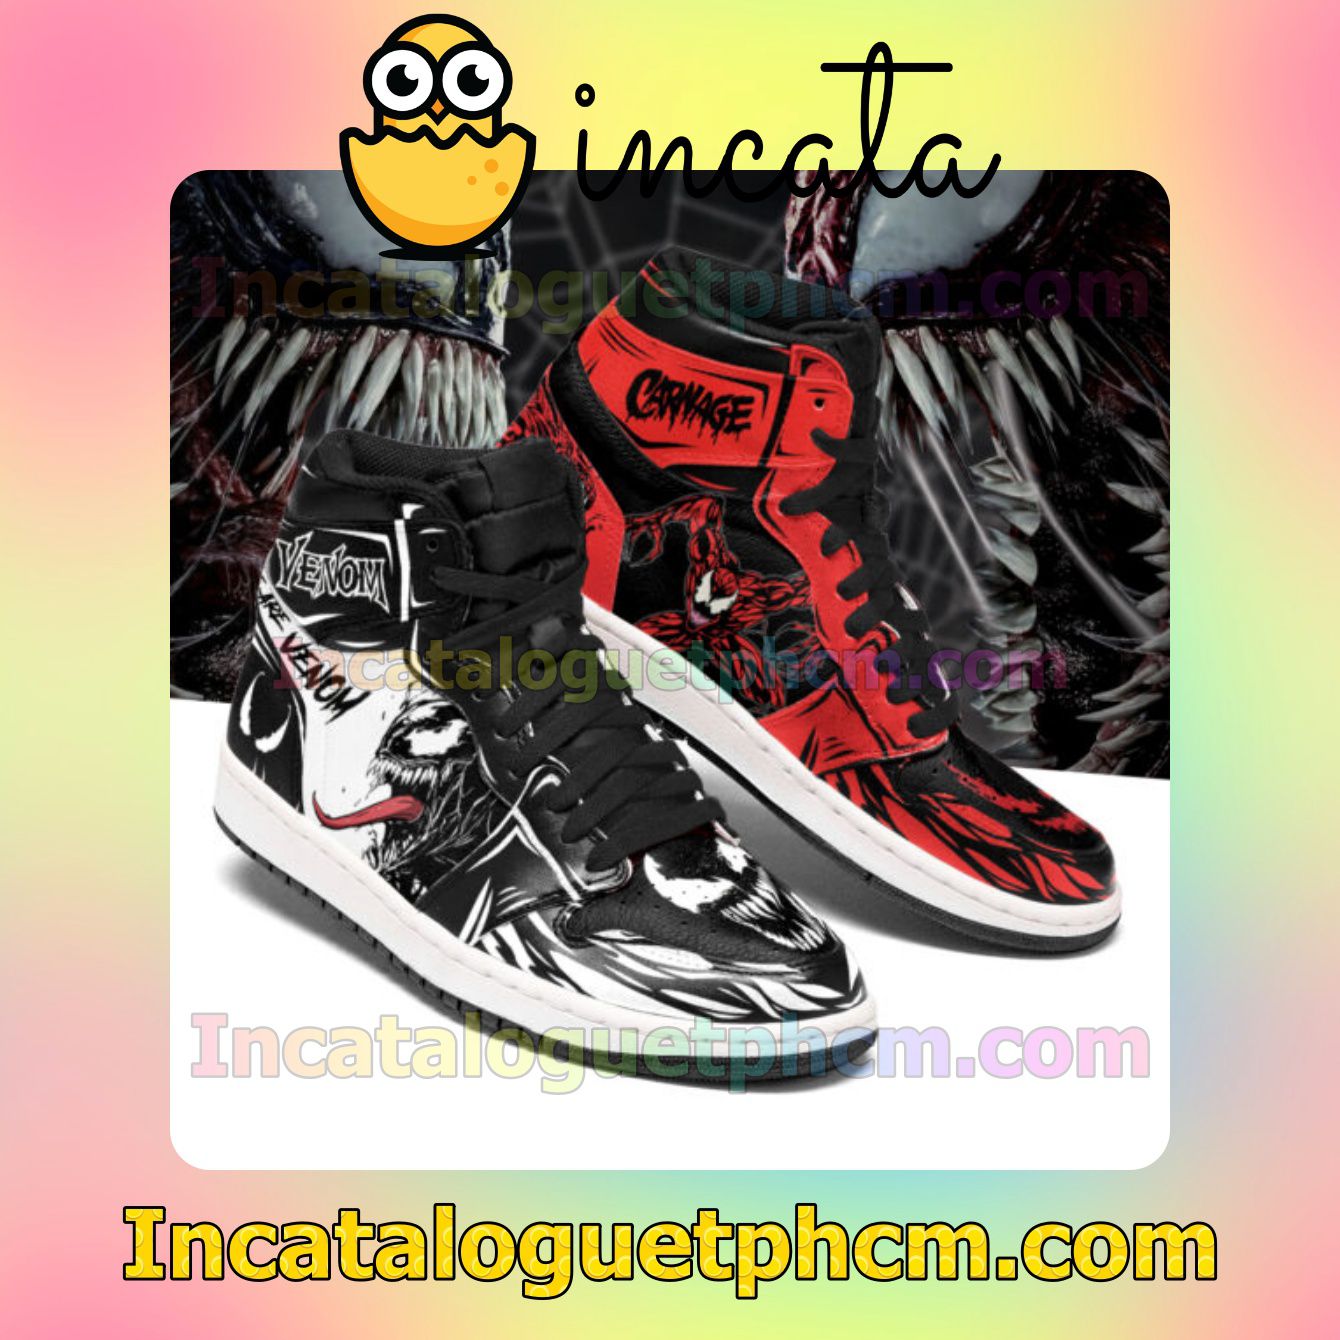 Venom vs Carnage Air Jordan Red and Black Air Jordan 1 Inspired Shoes